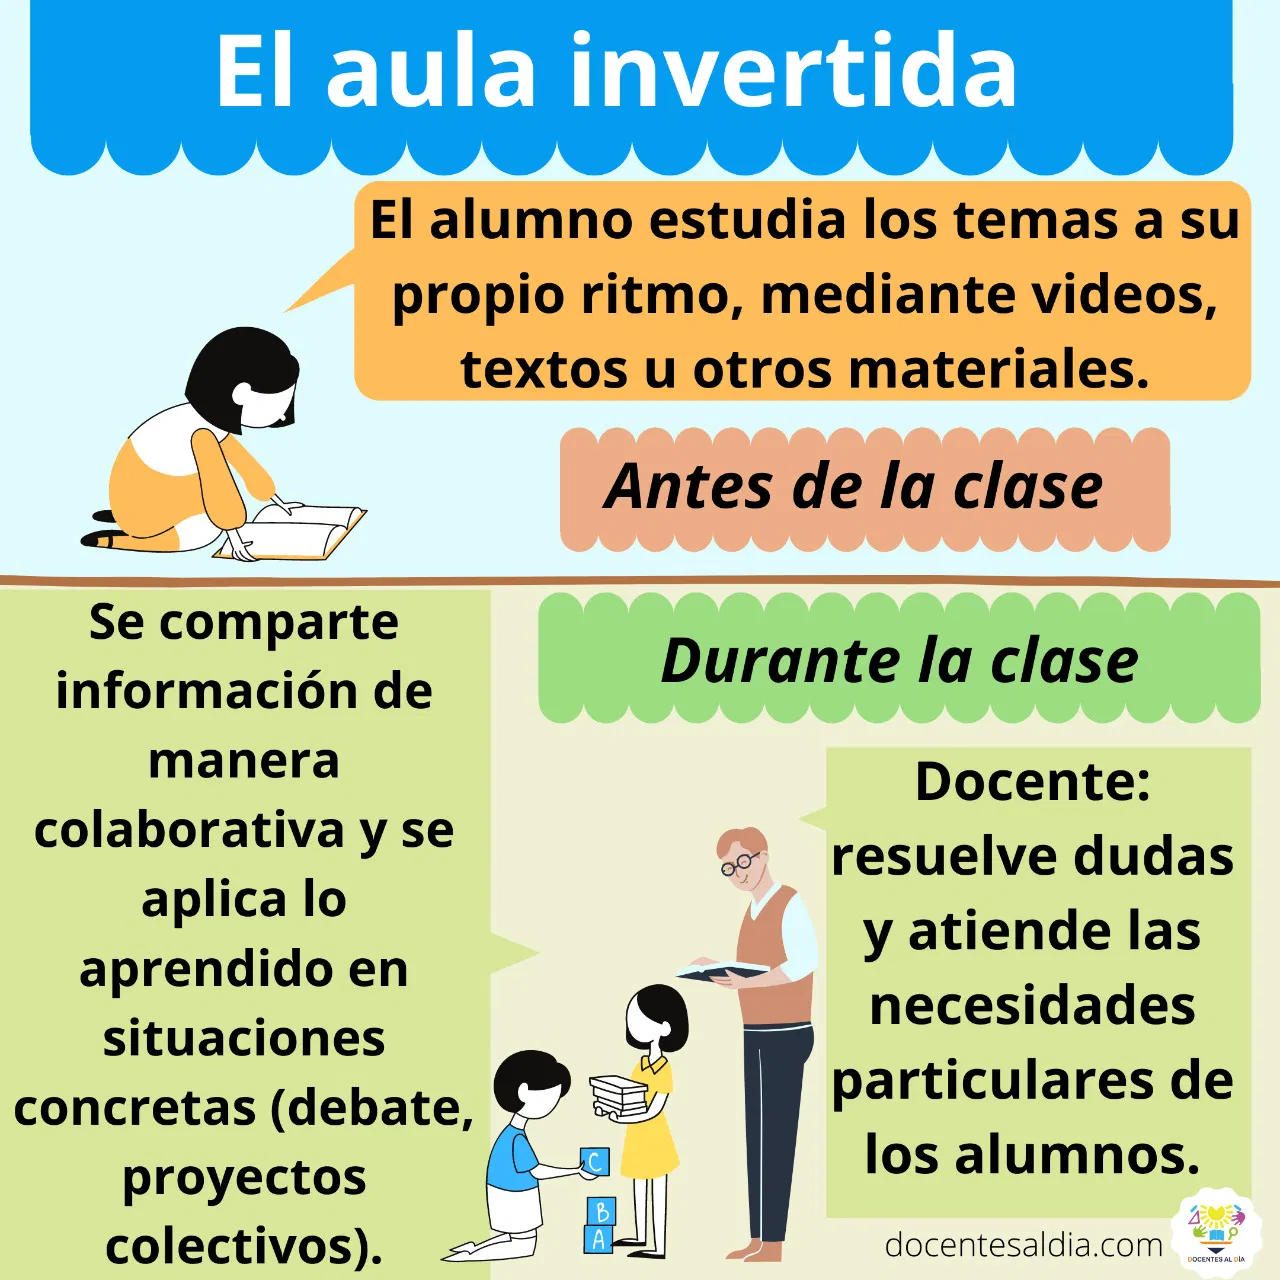 El aula invertida: antes y durante la clase